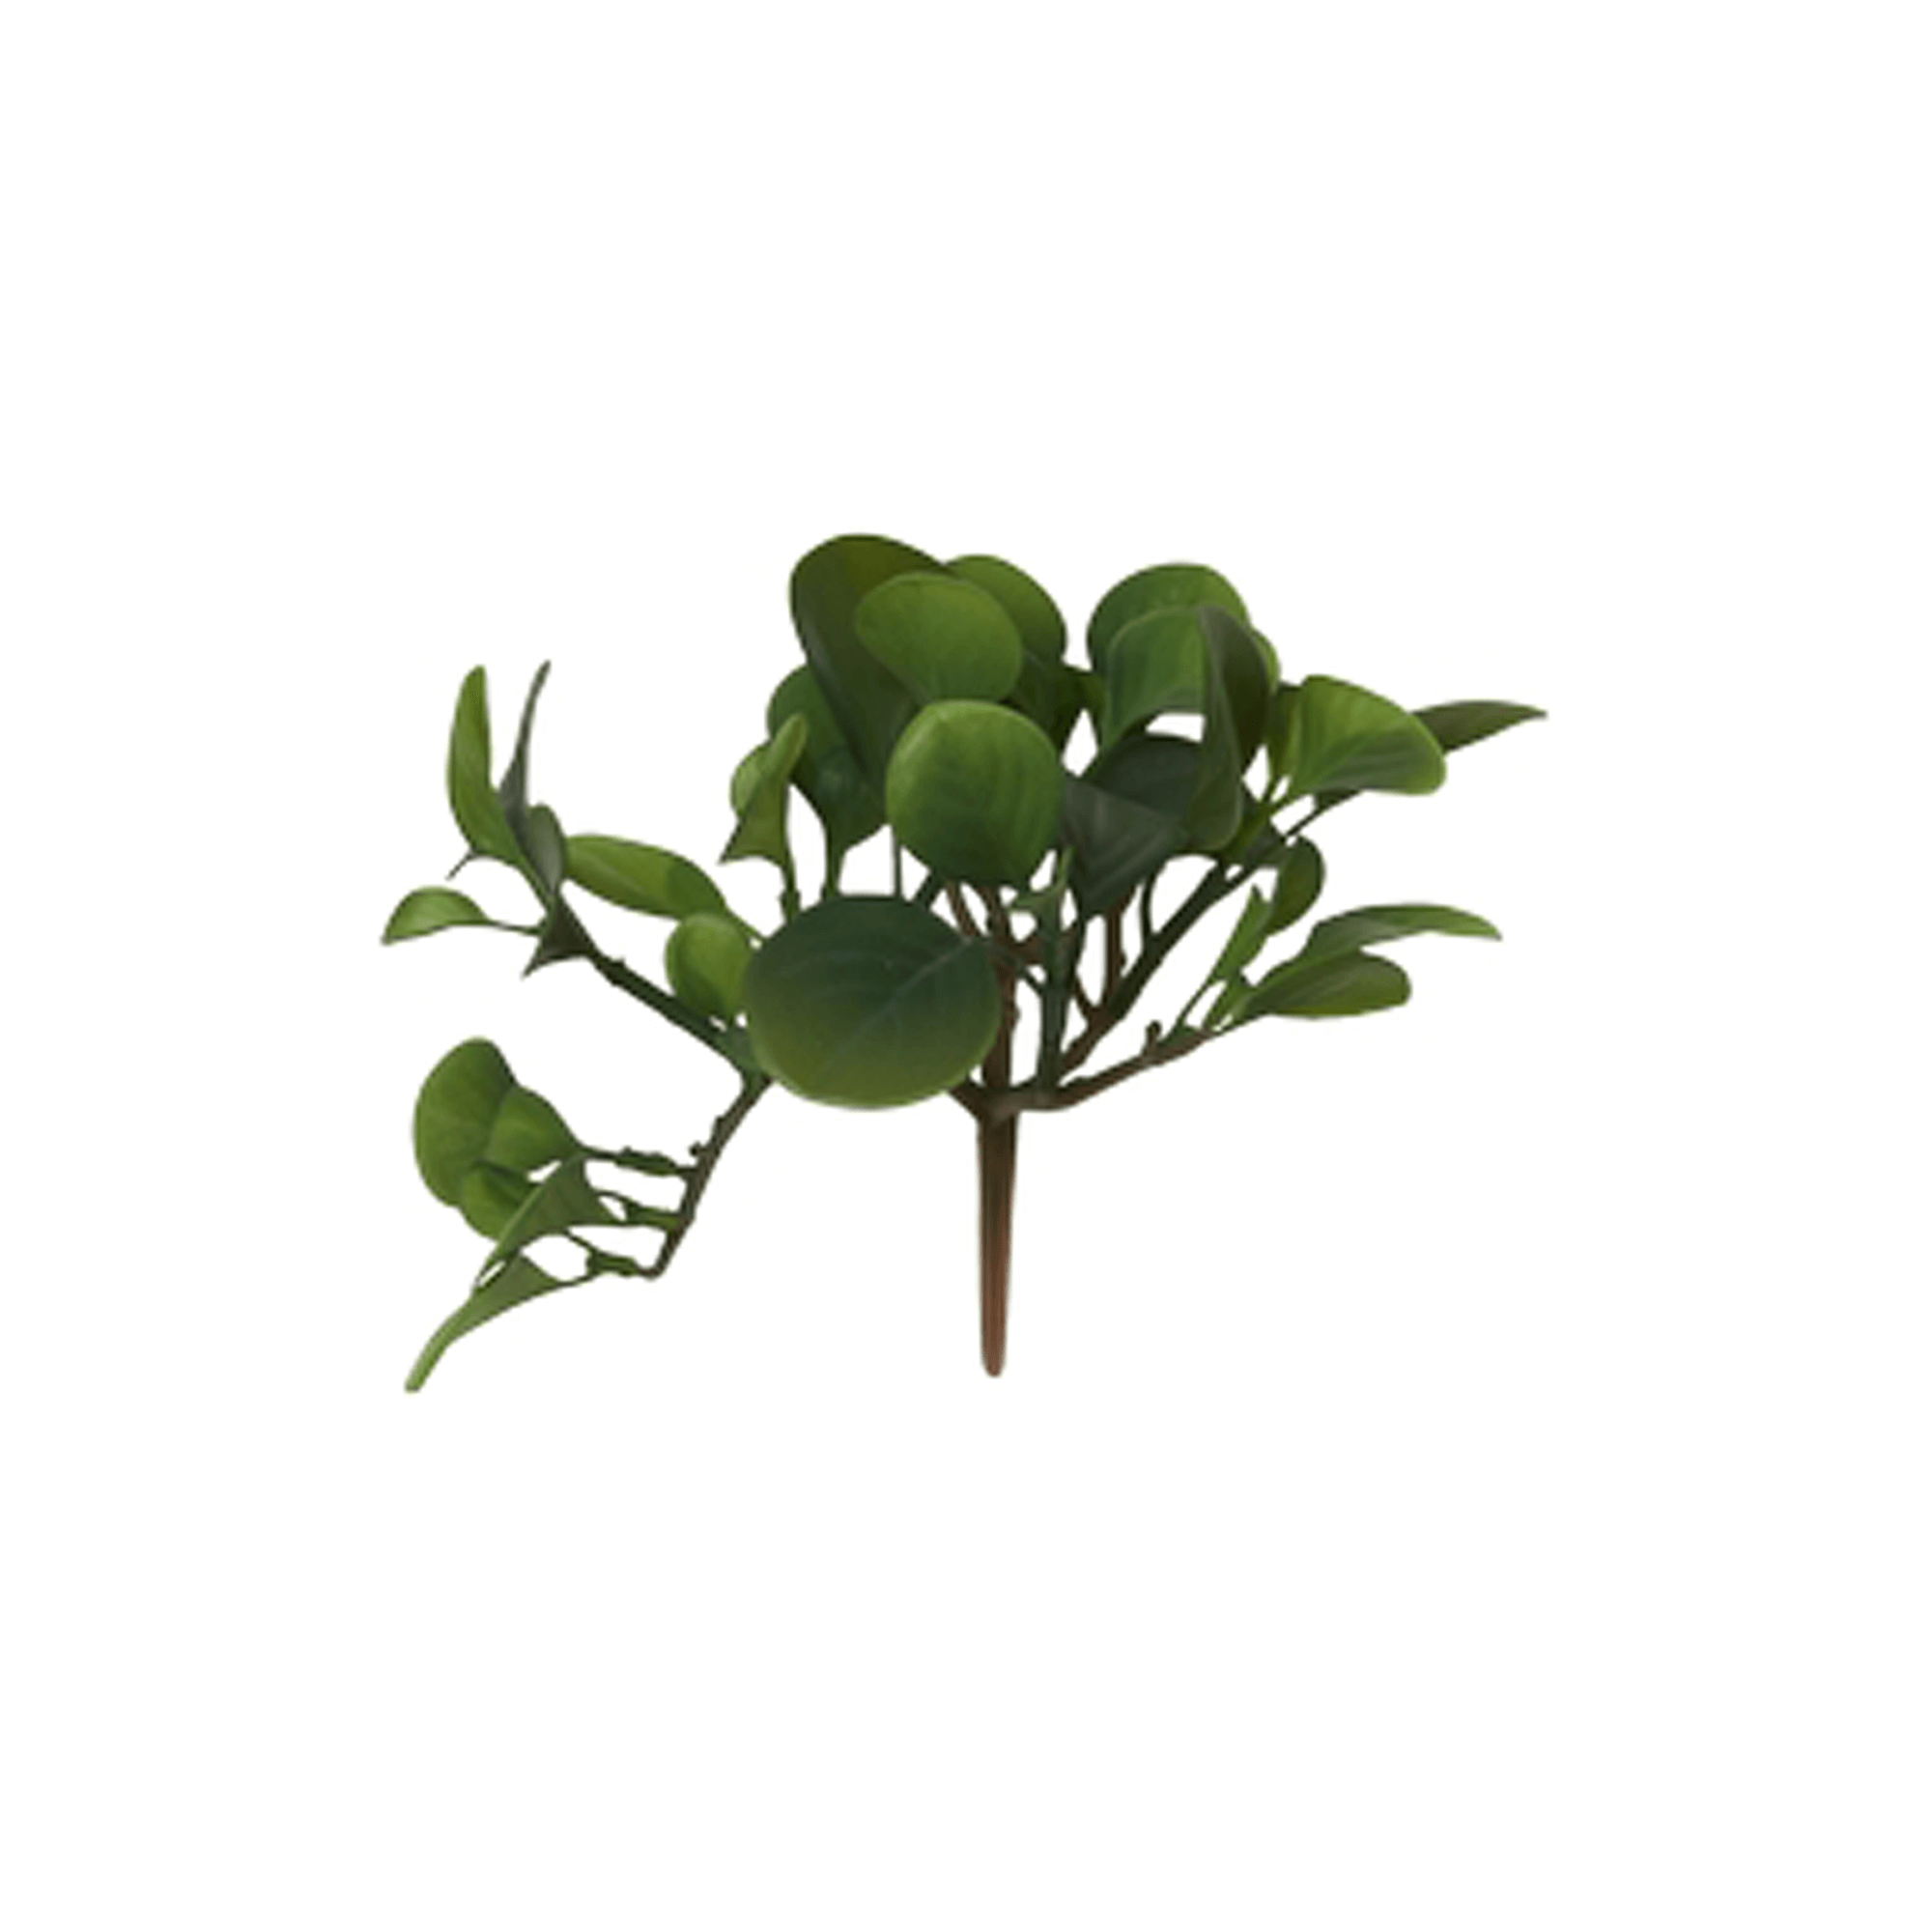 Se Lille kunstig plante, 15 cm. hos Naga.dk